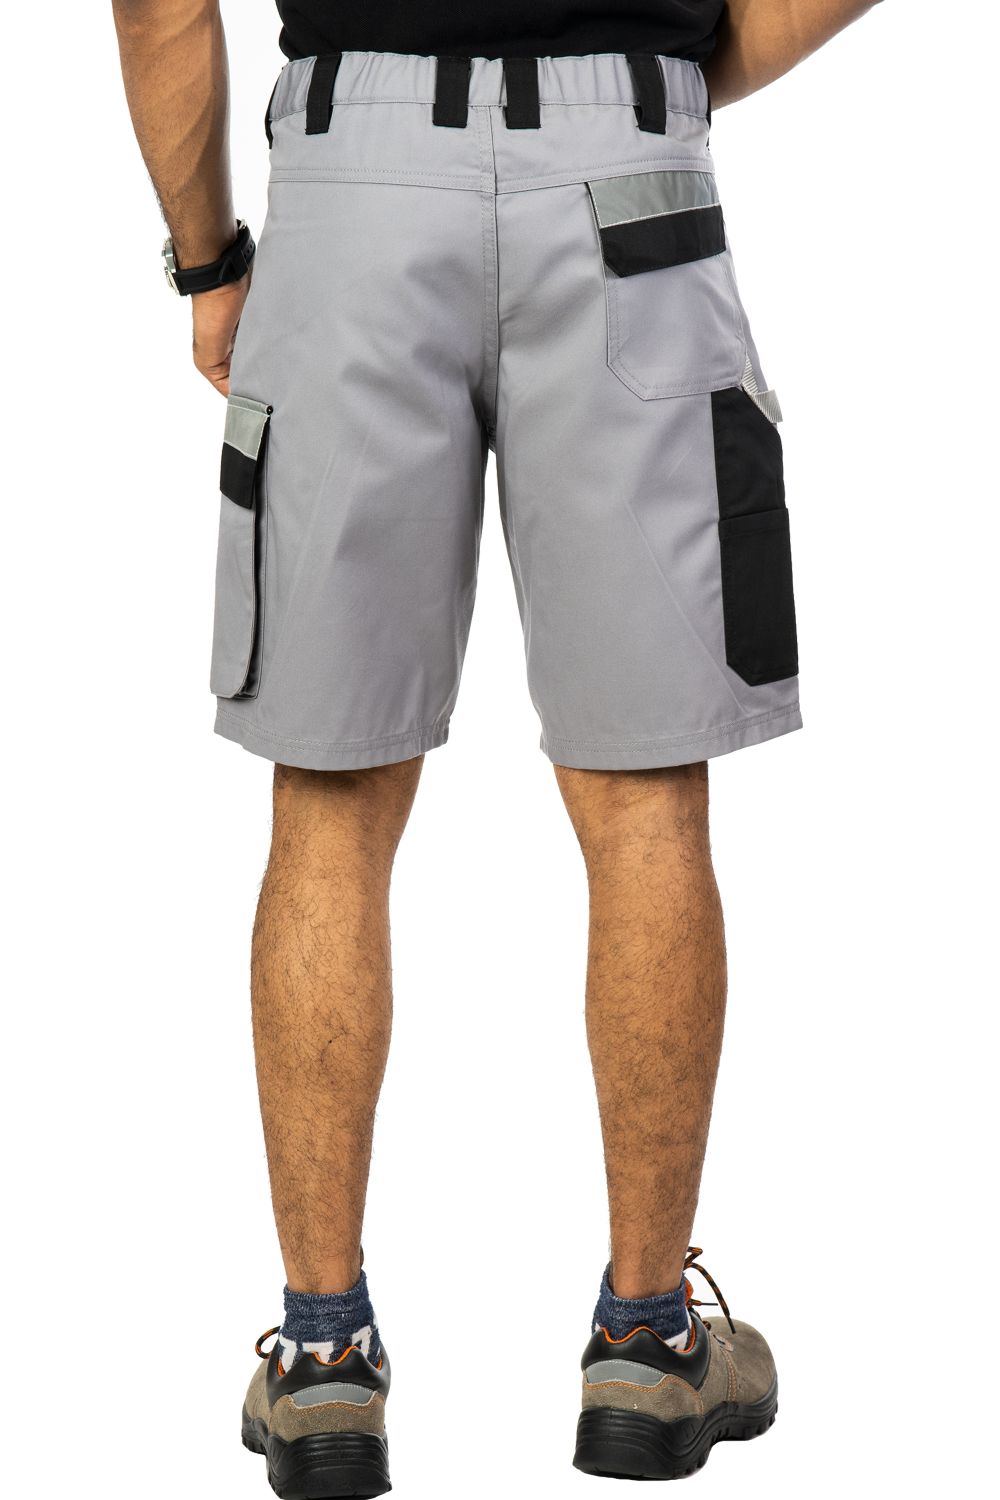 industrial design ergonomic carbon-black shorts